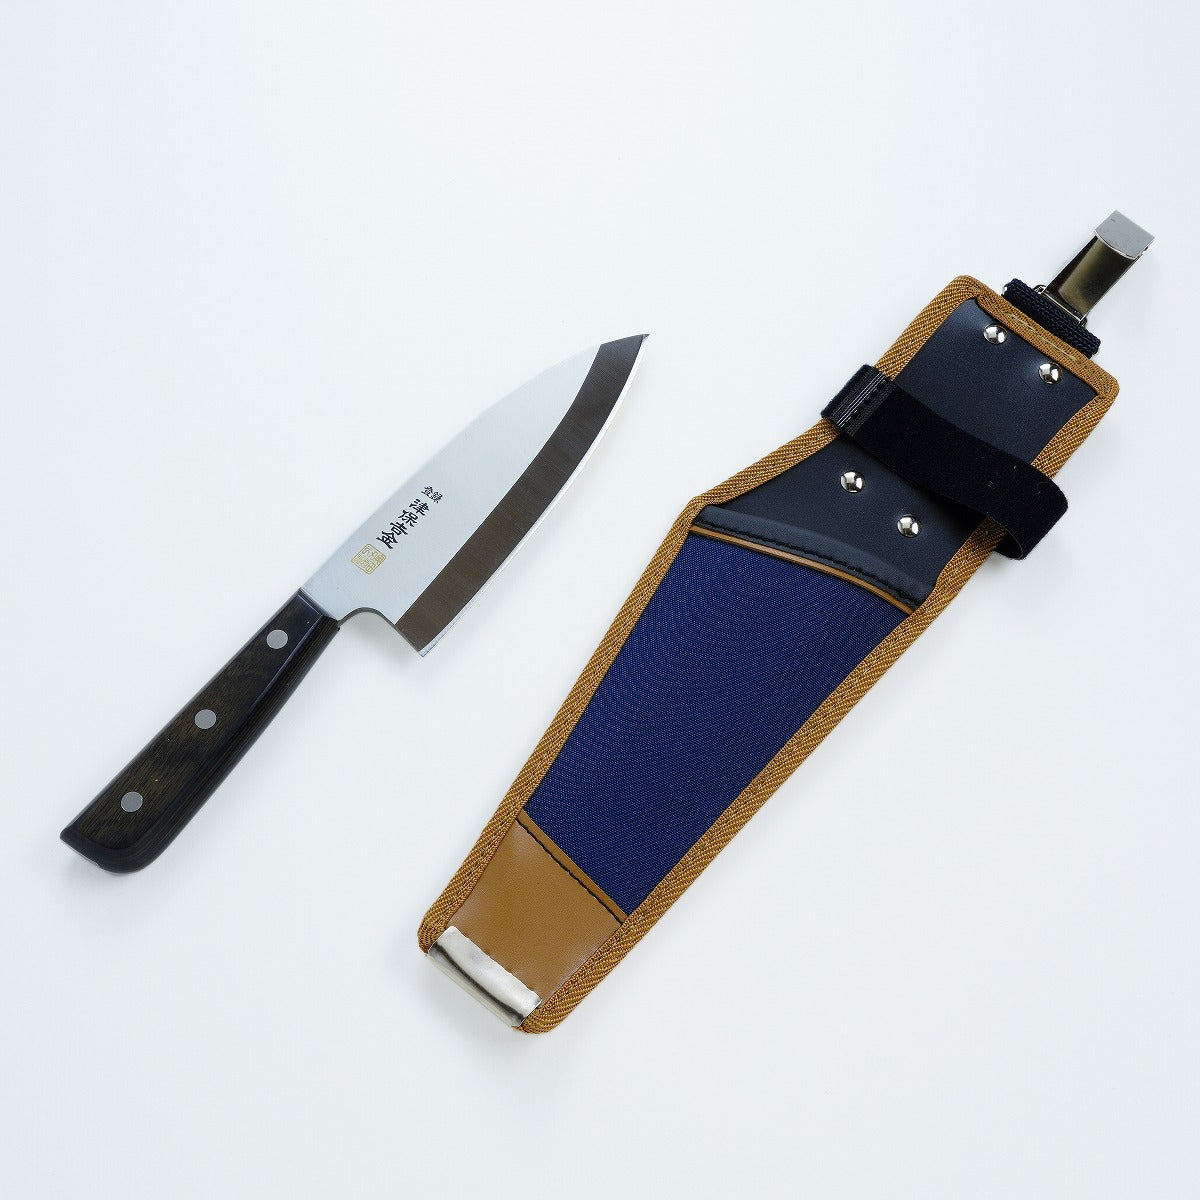 Stainless Steel 150mm Deba Knife and Nylon Case set